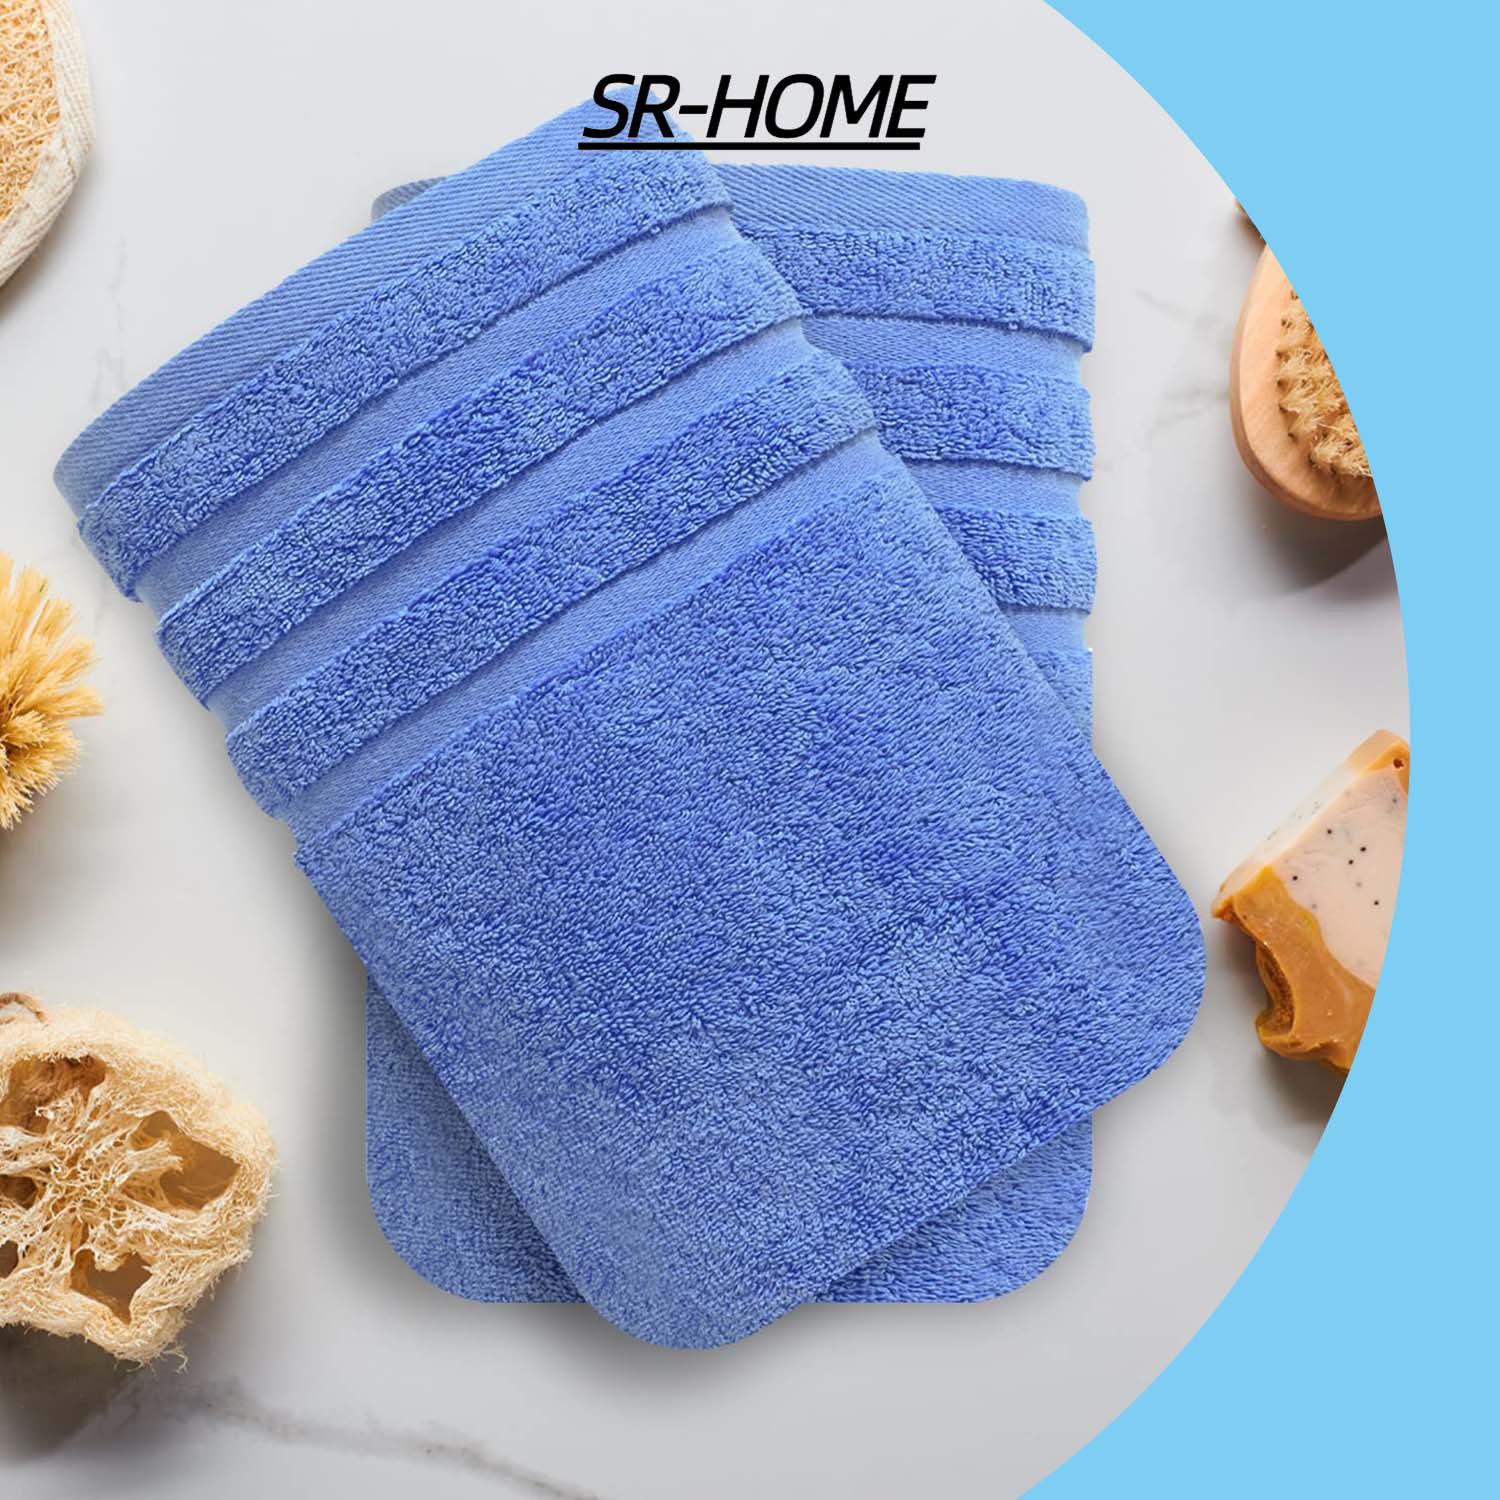 SR-HOME Bath Towels